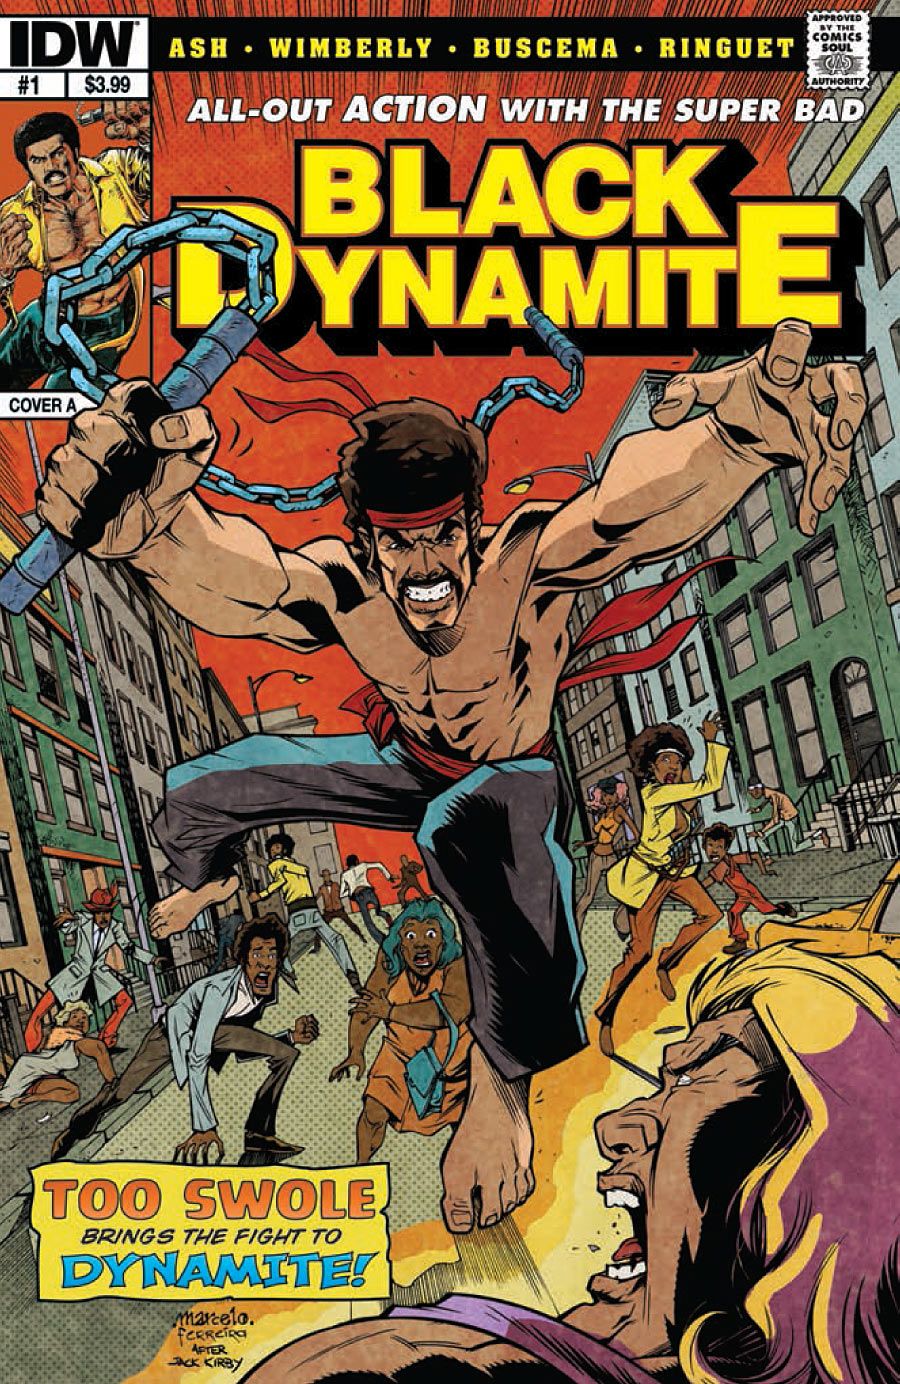 black dynamite season 1 episode 5 uncut